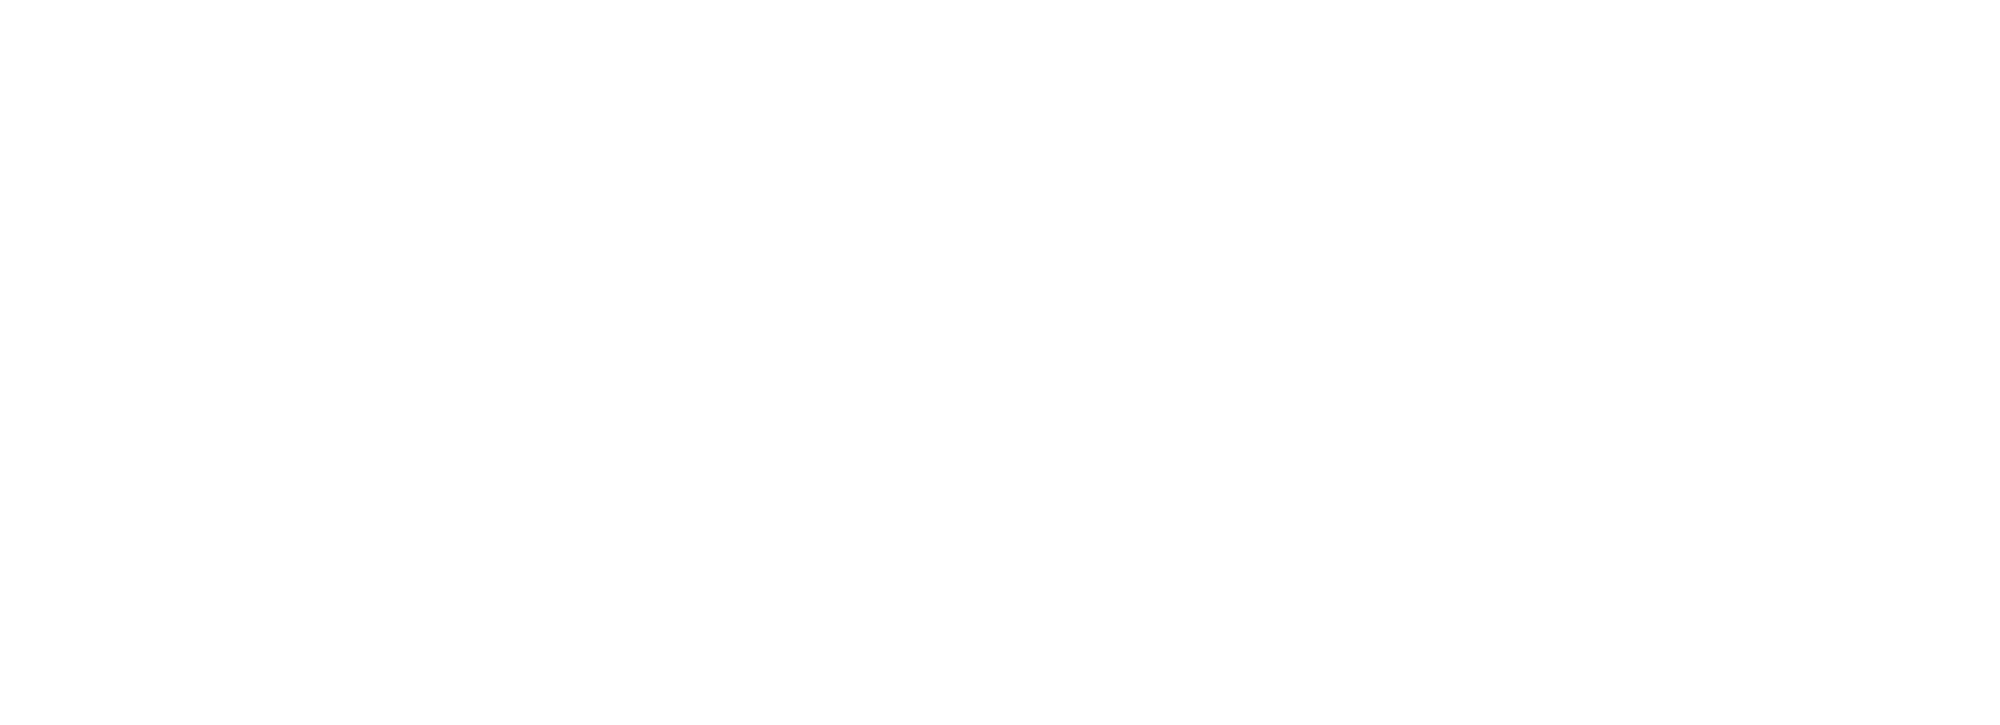 Acropoli Invictus logo